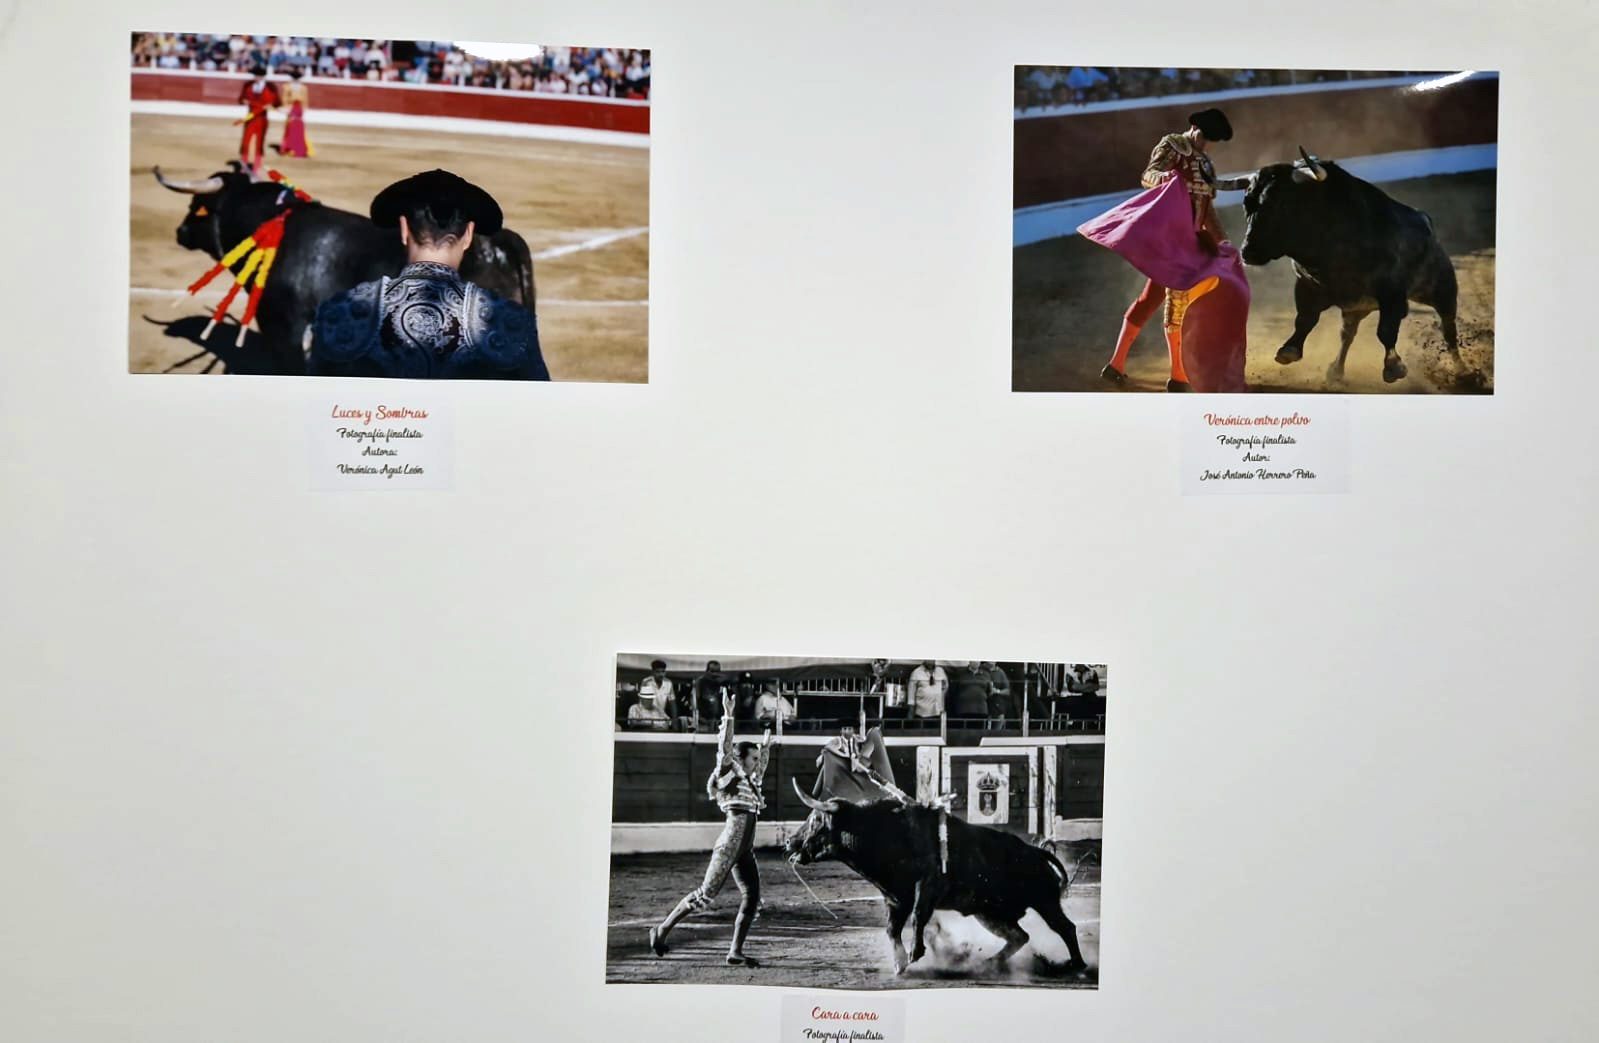 Imágenes que forman parte de la exposición de fotografía taurina